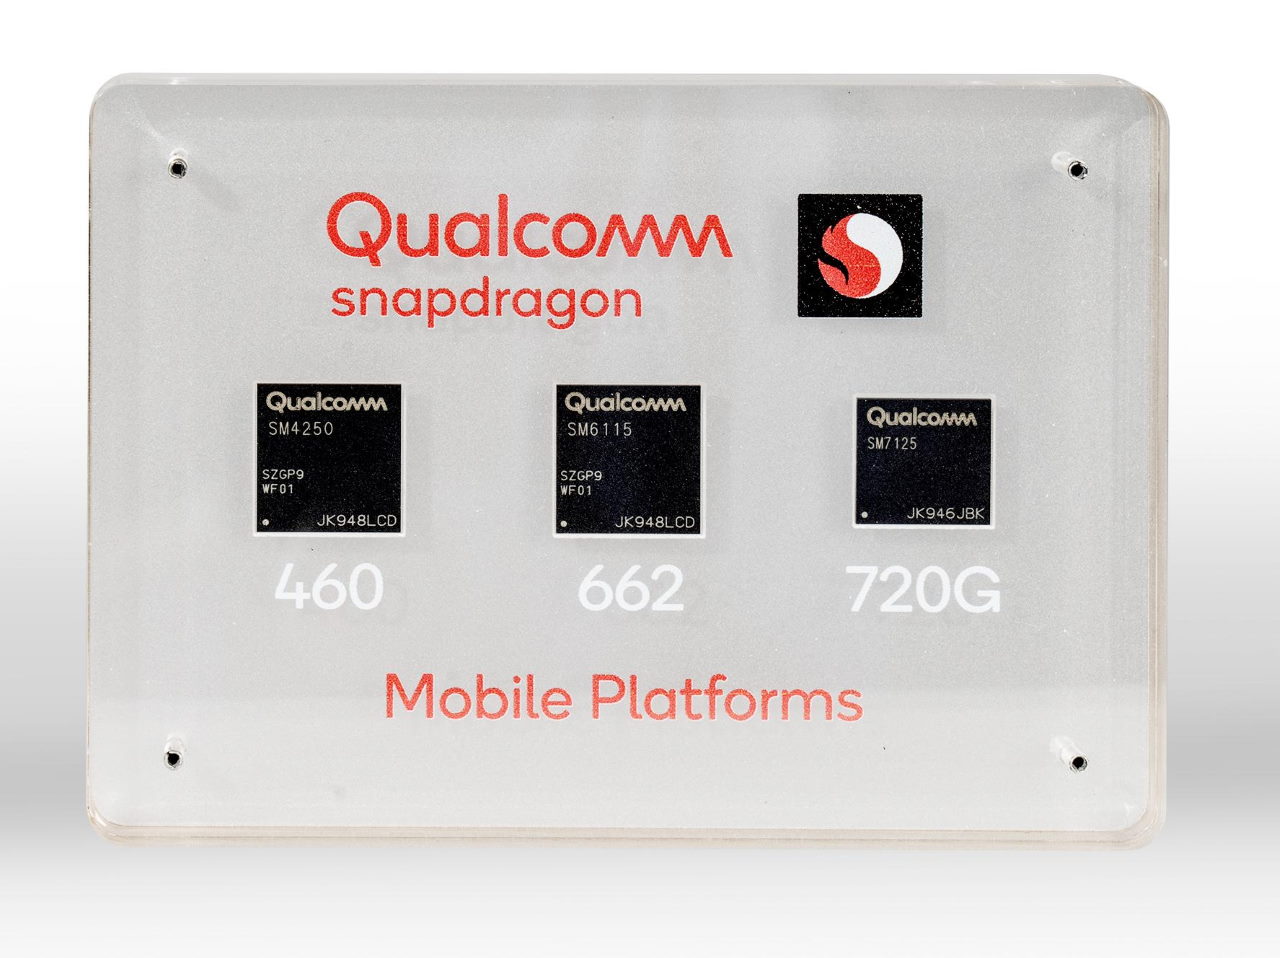 Qualcomm introduce los nuevos Snapdragon 720G, 662 y 460